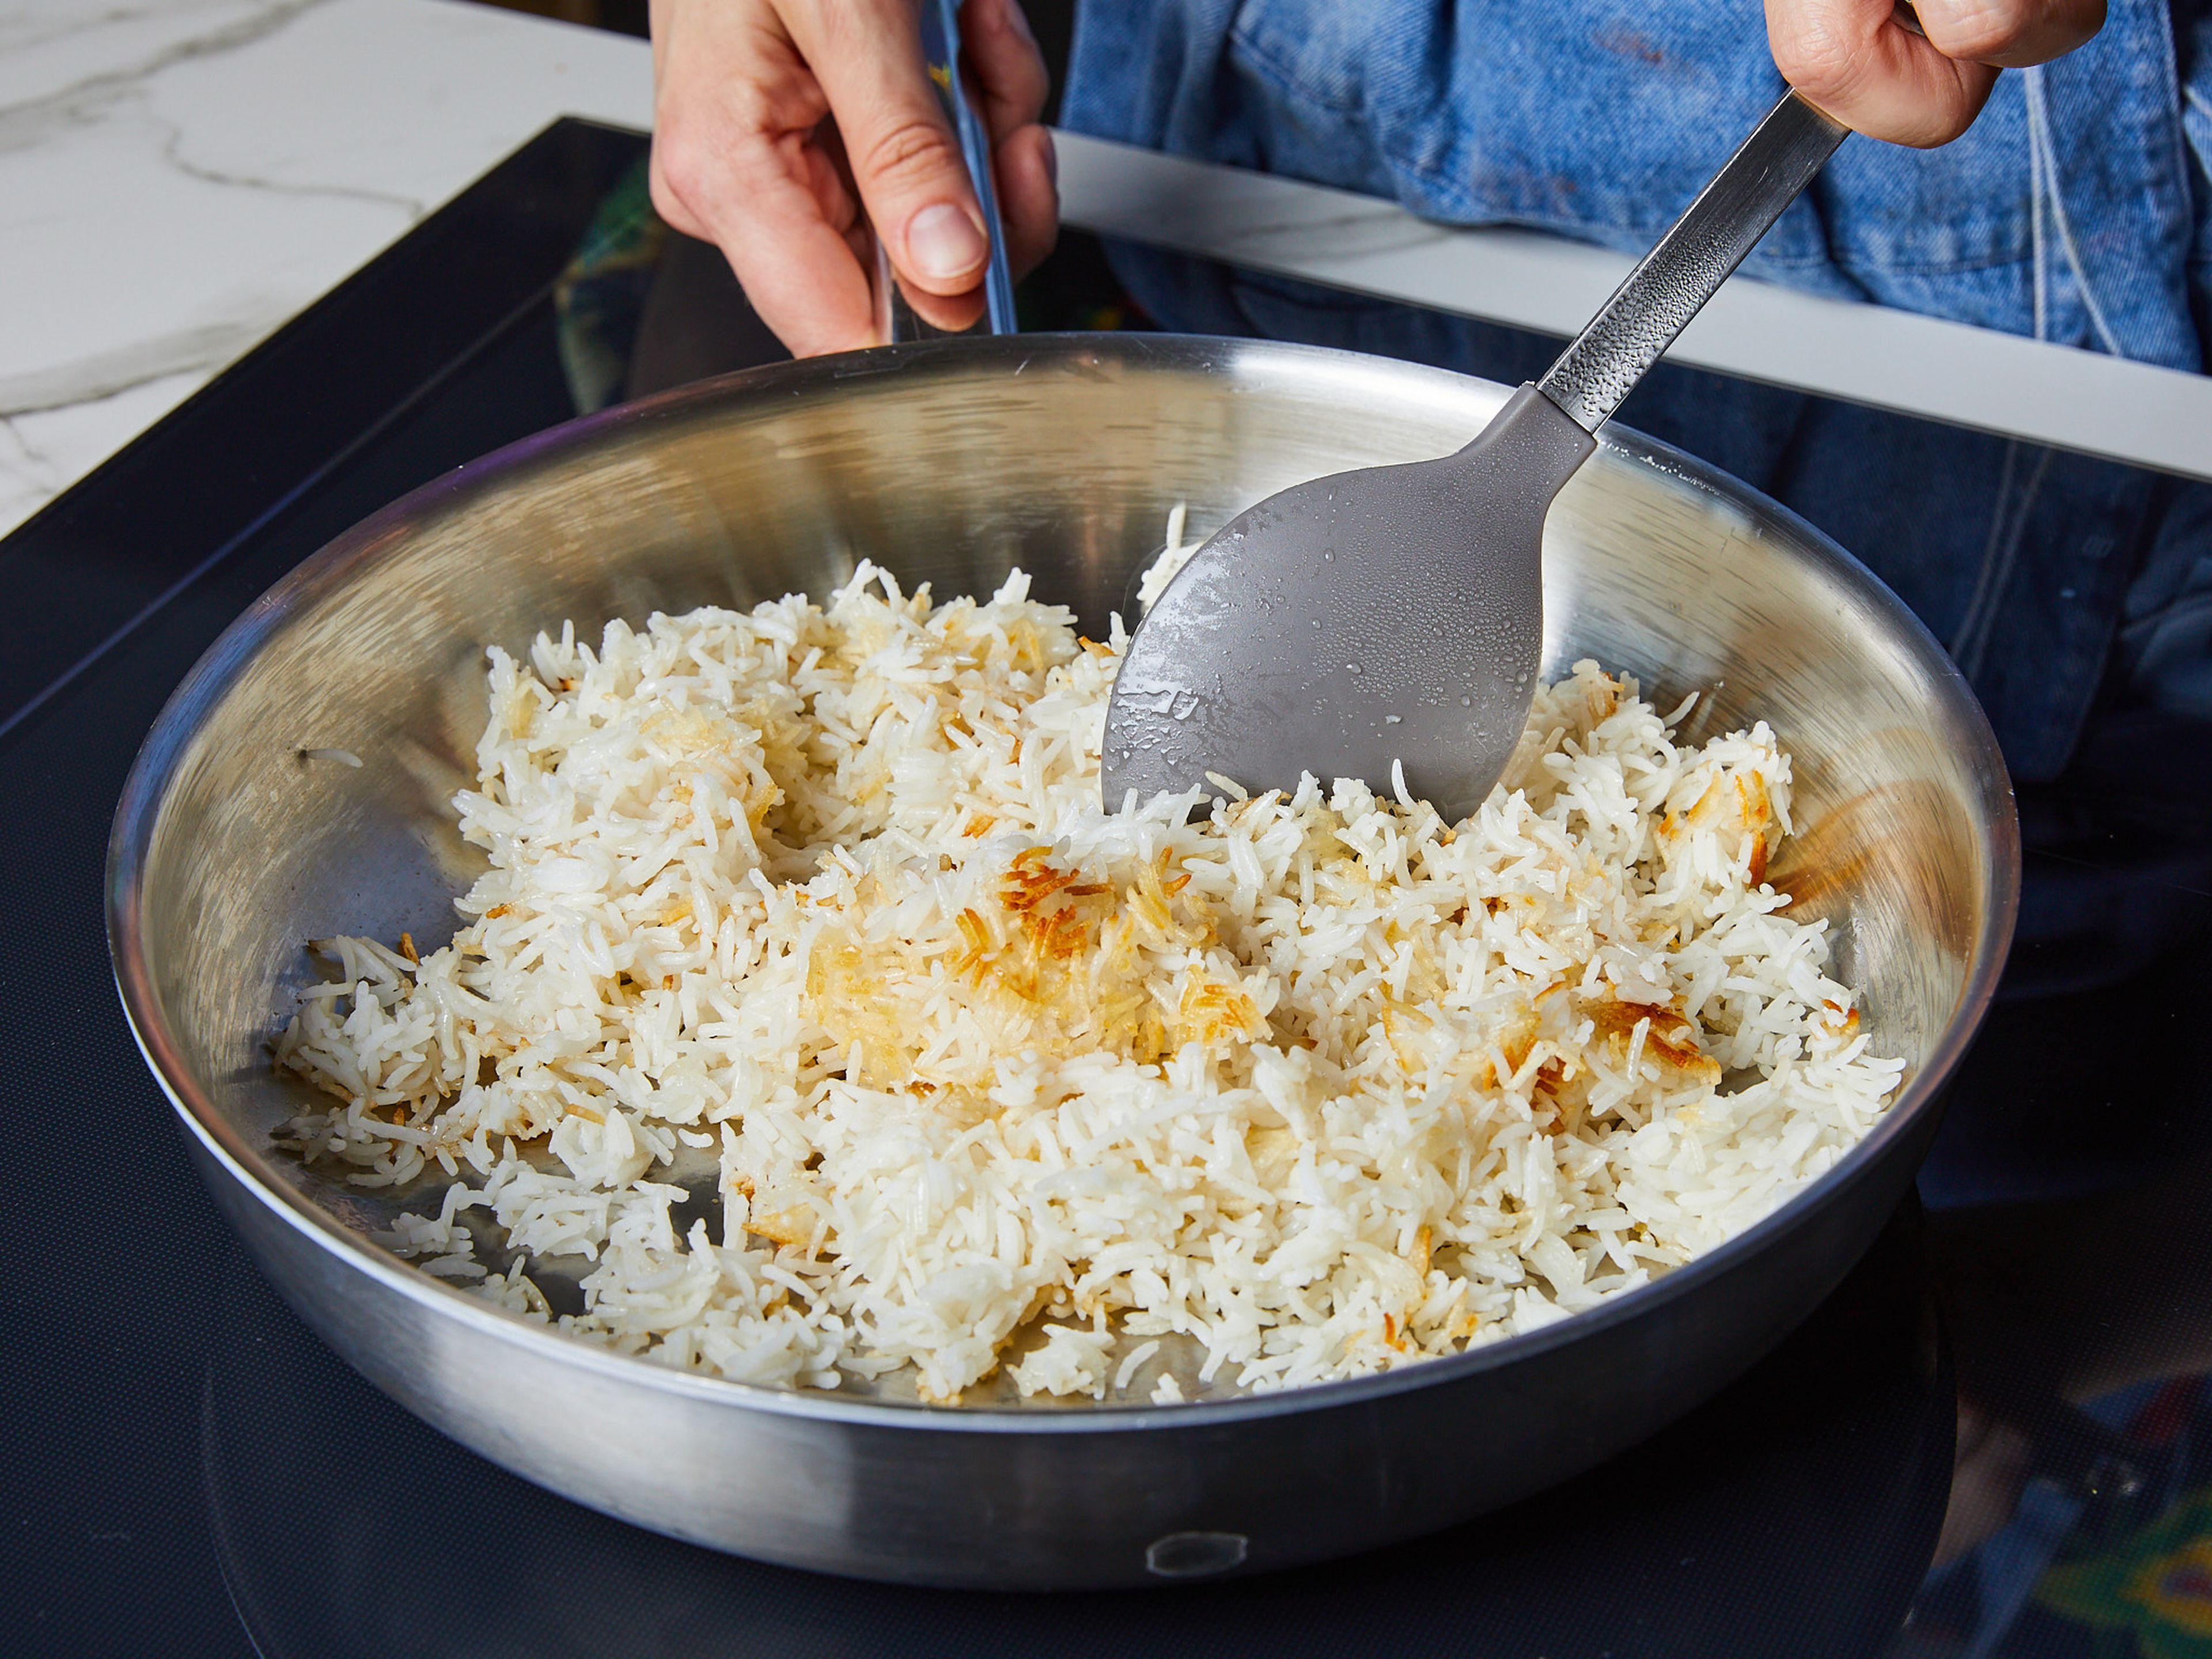 In der Zwischenzeit ein weiteres ¼ des Öls in einer Pfanne erhitzen, den gekochten Reis hinzugeben und unter Rühren bei starker Hitze ca. 7–10 Min. braten, bis der Reis knusprig und goldbraun ist. Darauf achten, dass die Reiskörner nicht zerdrückt werden. Dann das Gemüse auf das Backblech geben und alles weitere 8–10 Min. backen.